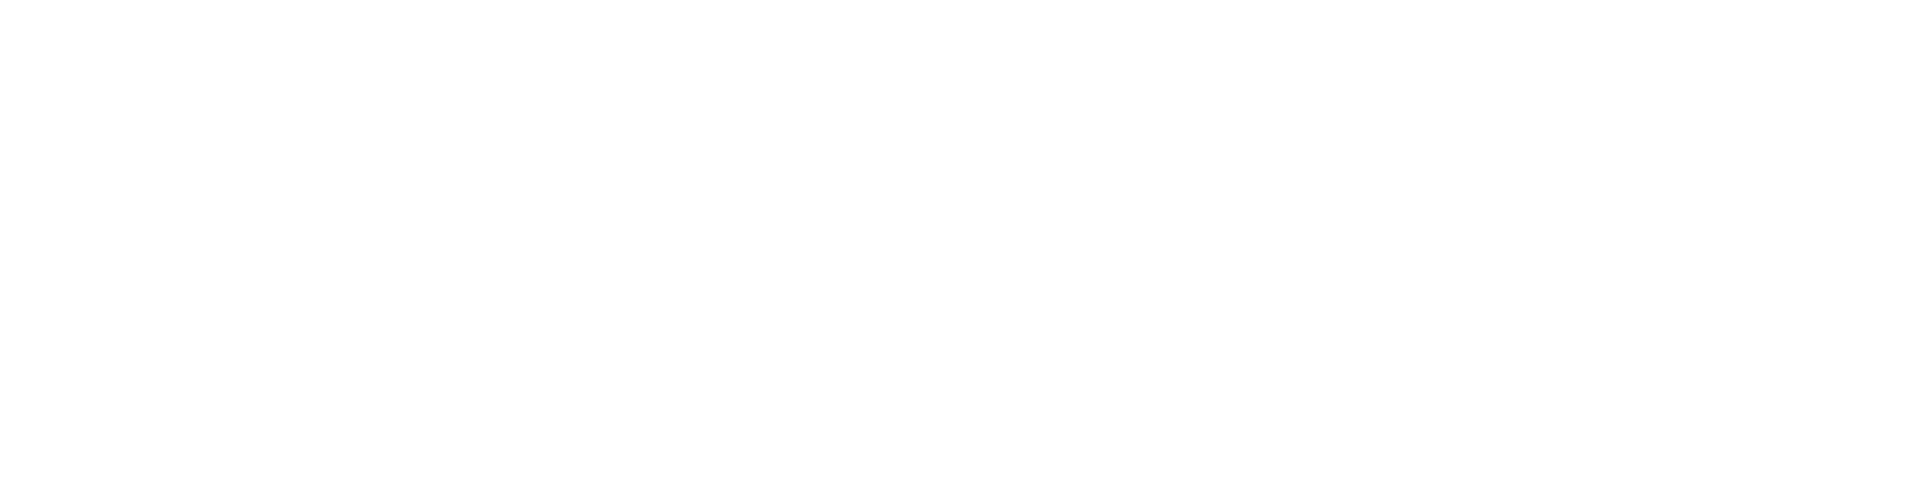 吉川Family Presents「僕らの街から」ロゴ